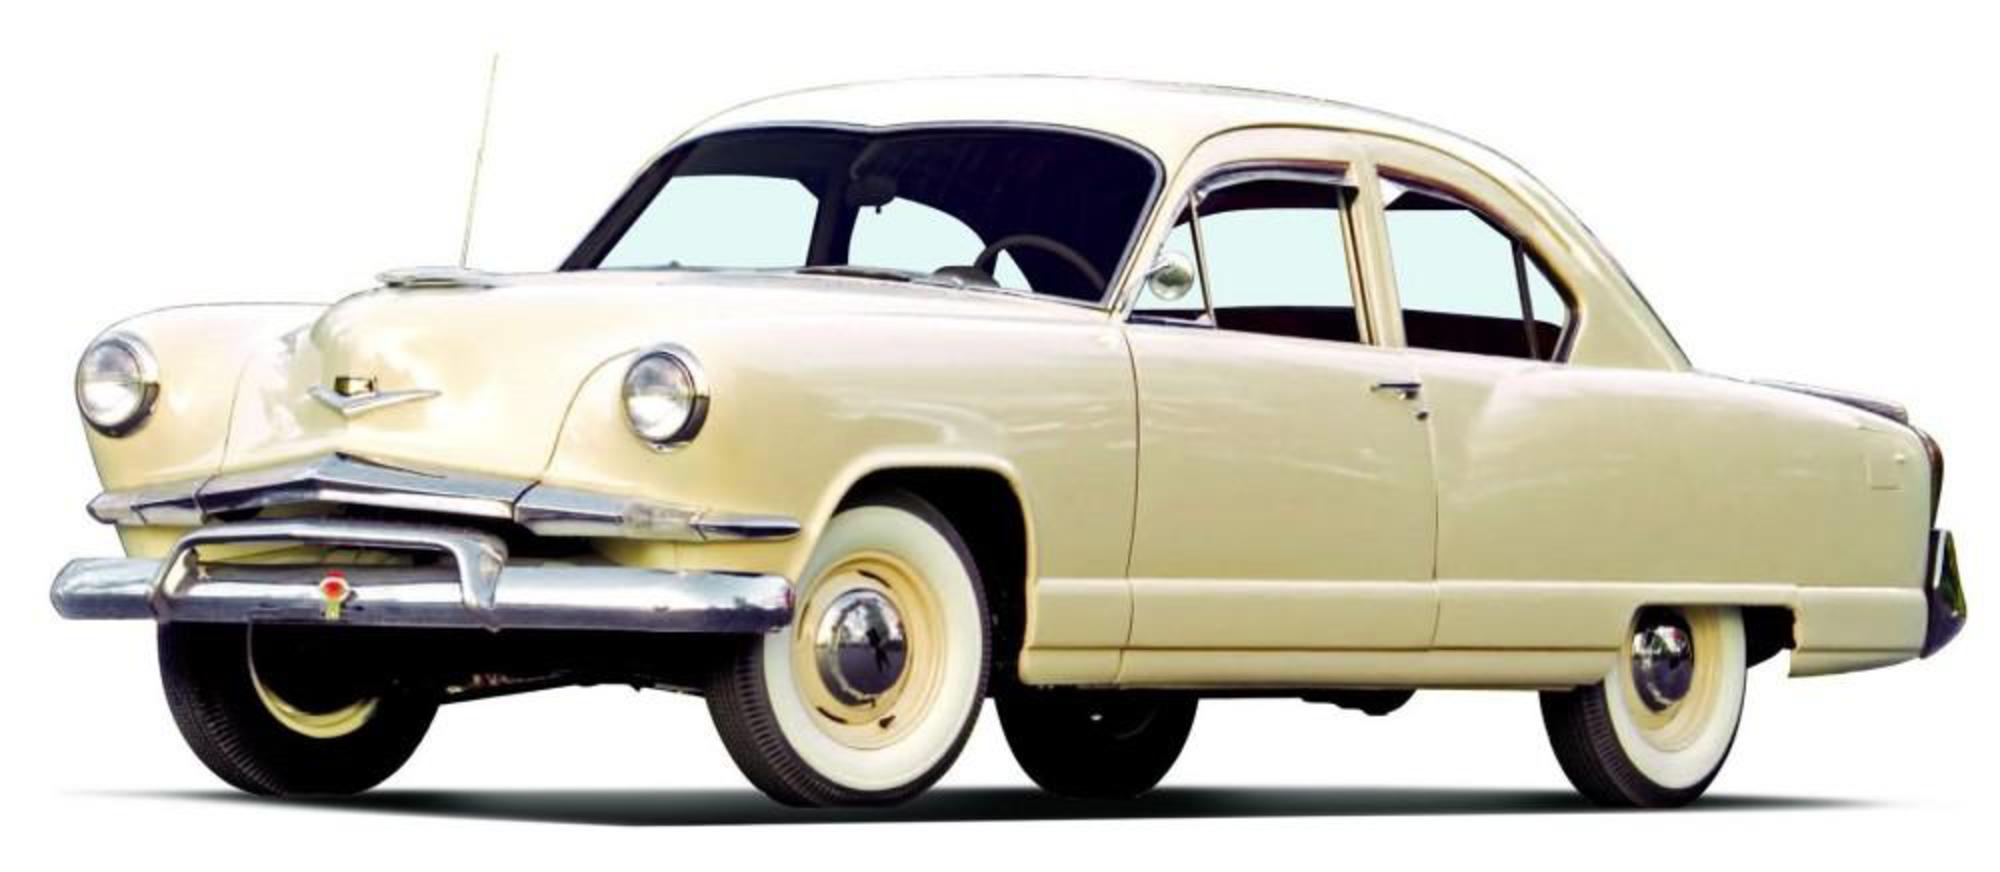 1953 Kaiser Carolina / Nouvelles du moteur Hemmings